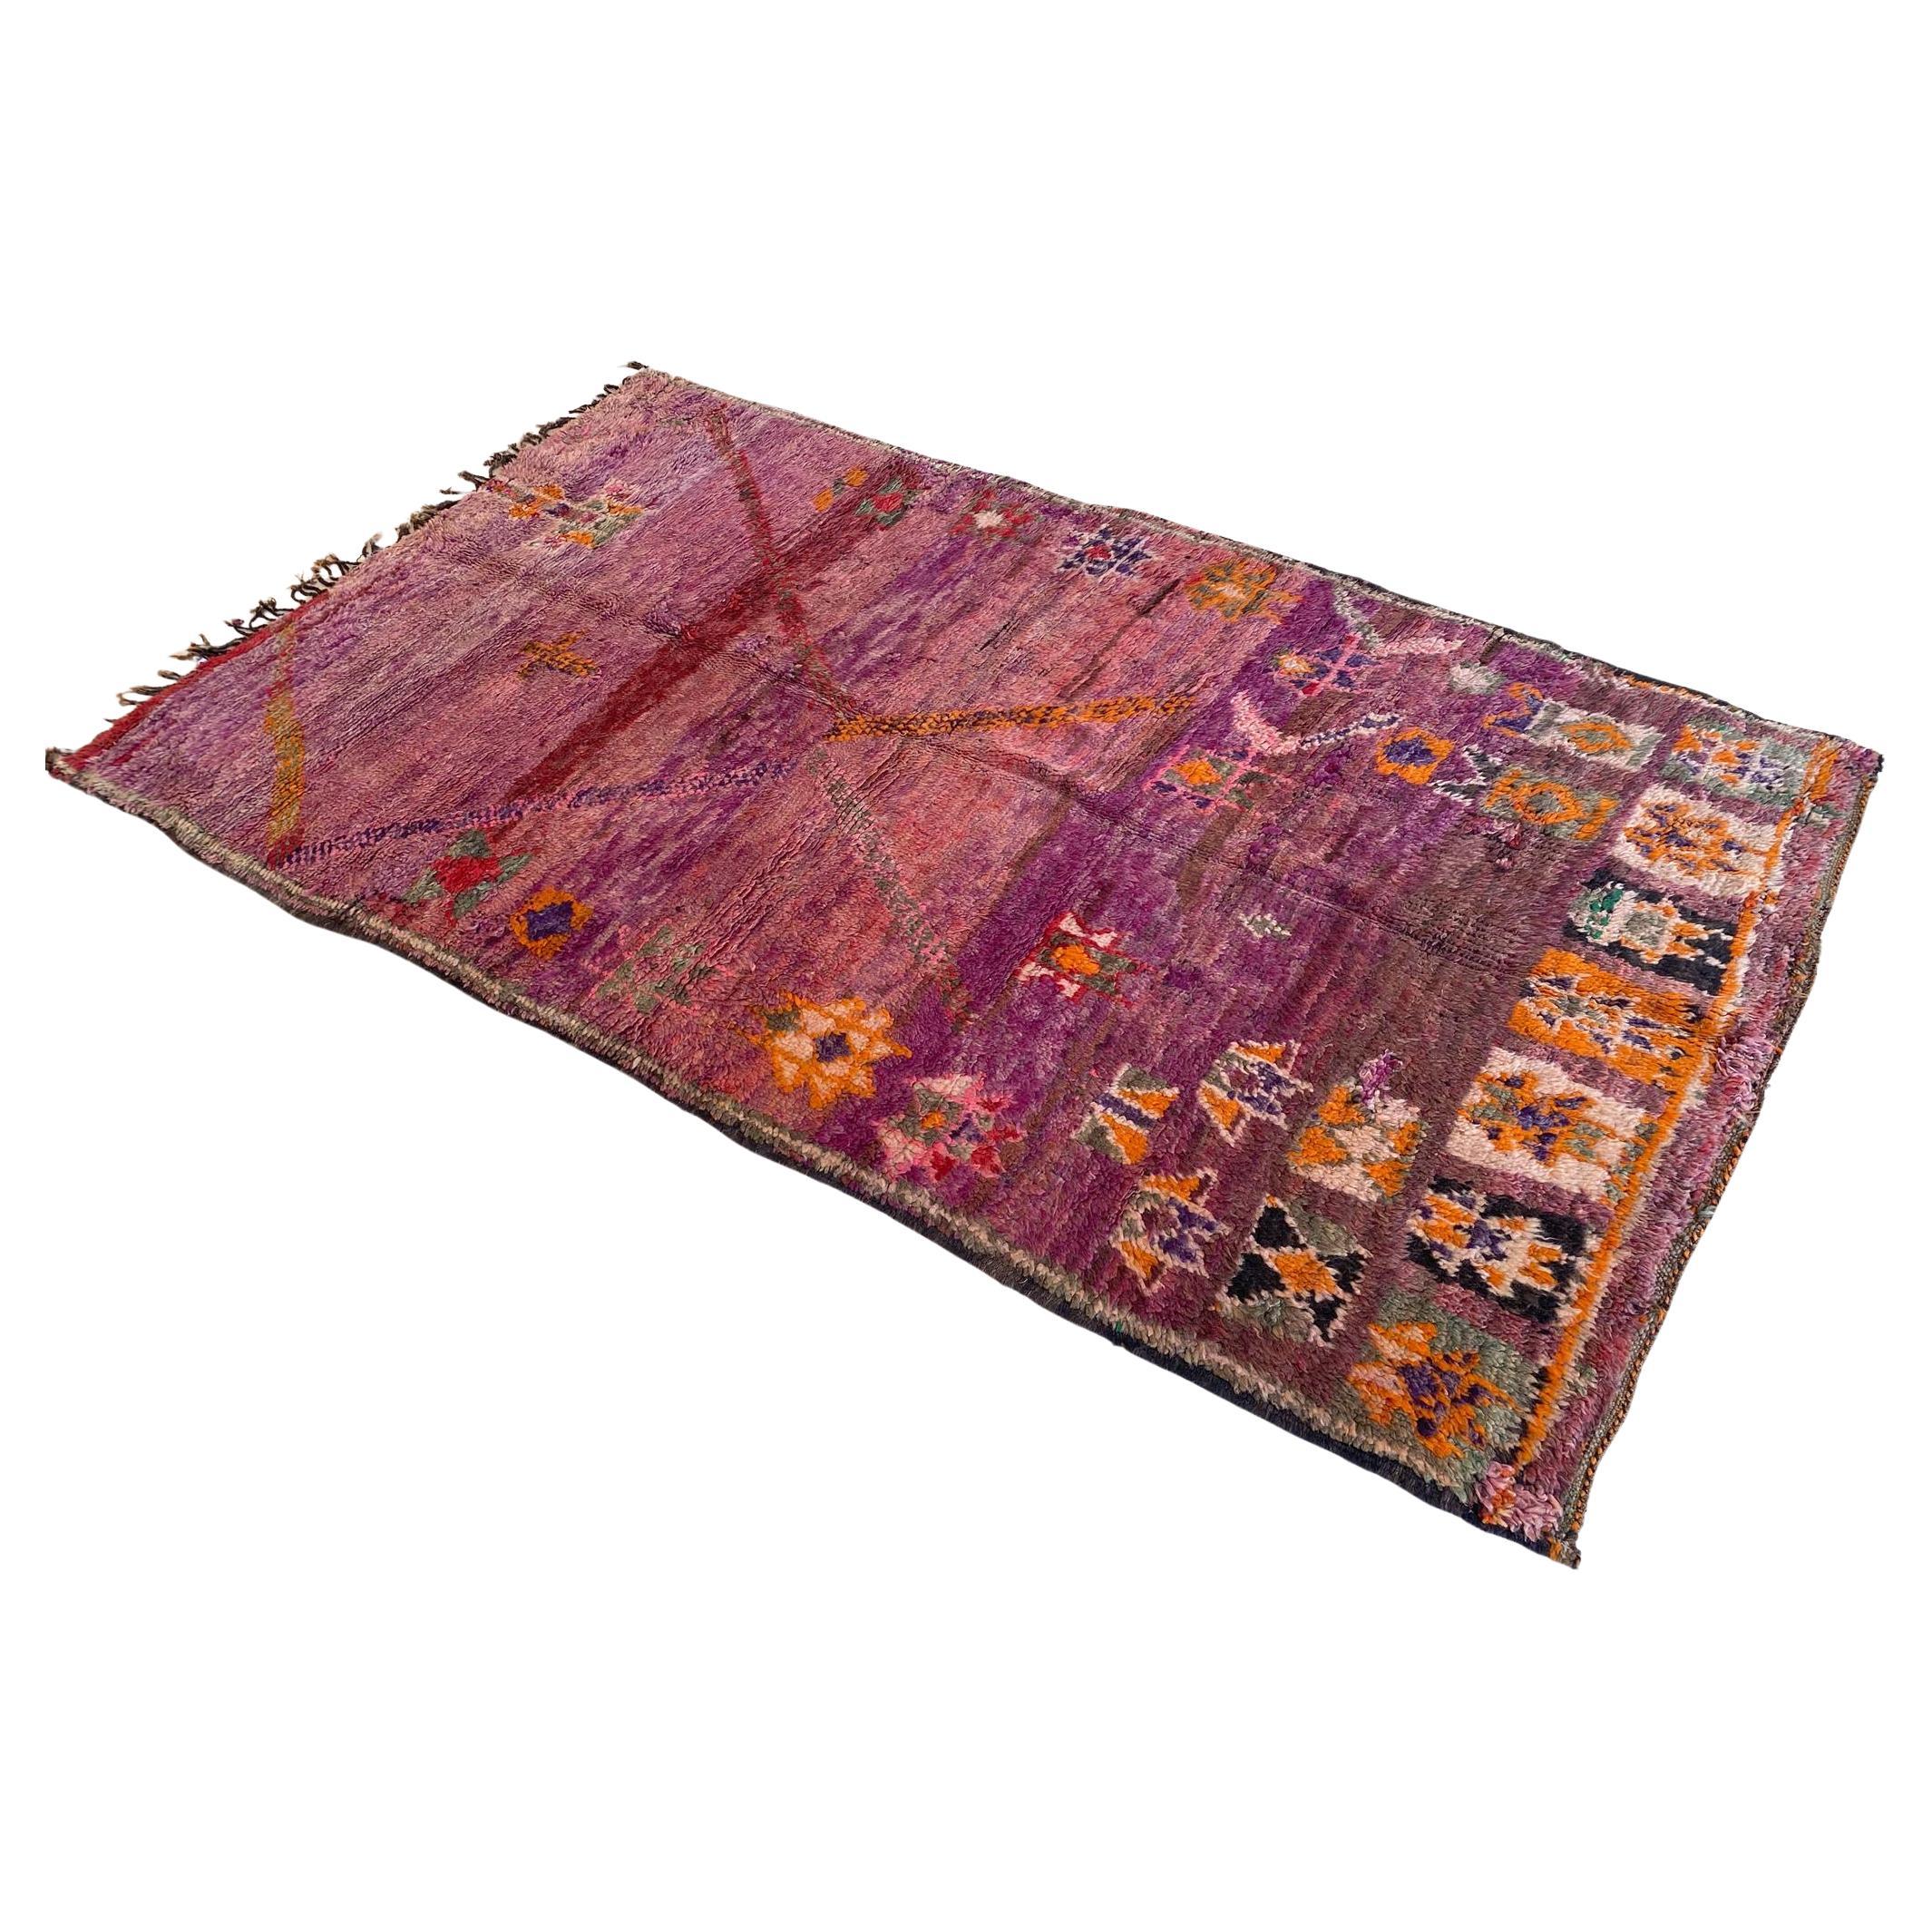 Marokkanischer Boujad-Teppich im Vintage-Stil - lila/orange - 5.1x8.8feet / 157x268cm